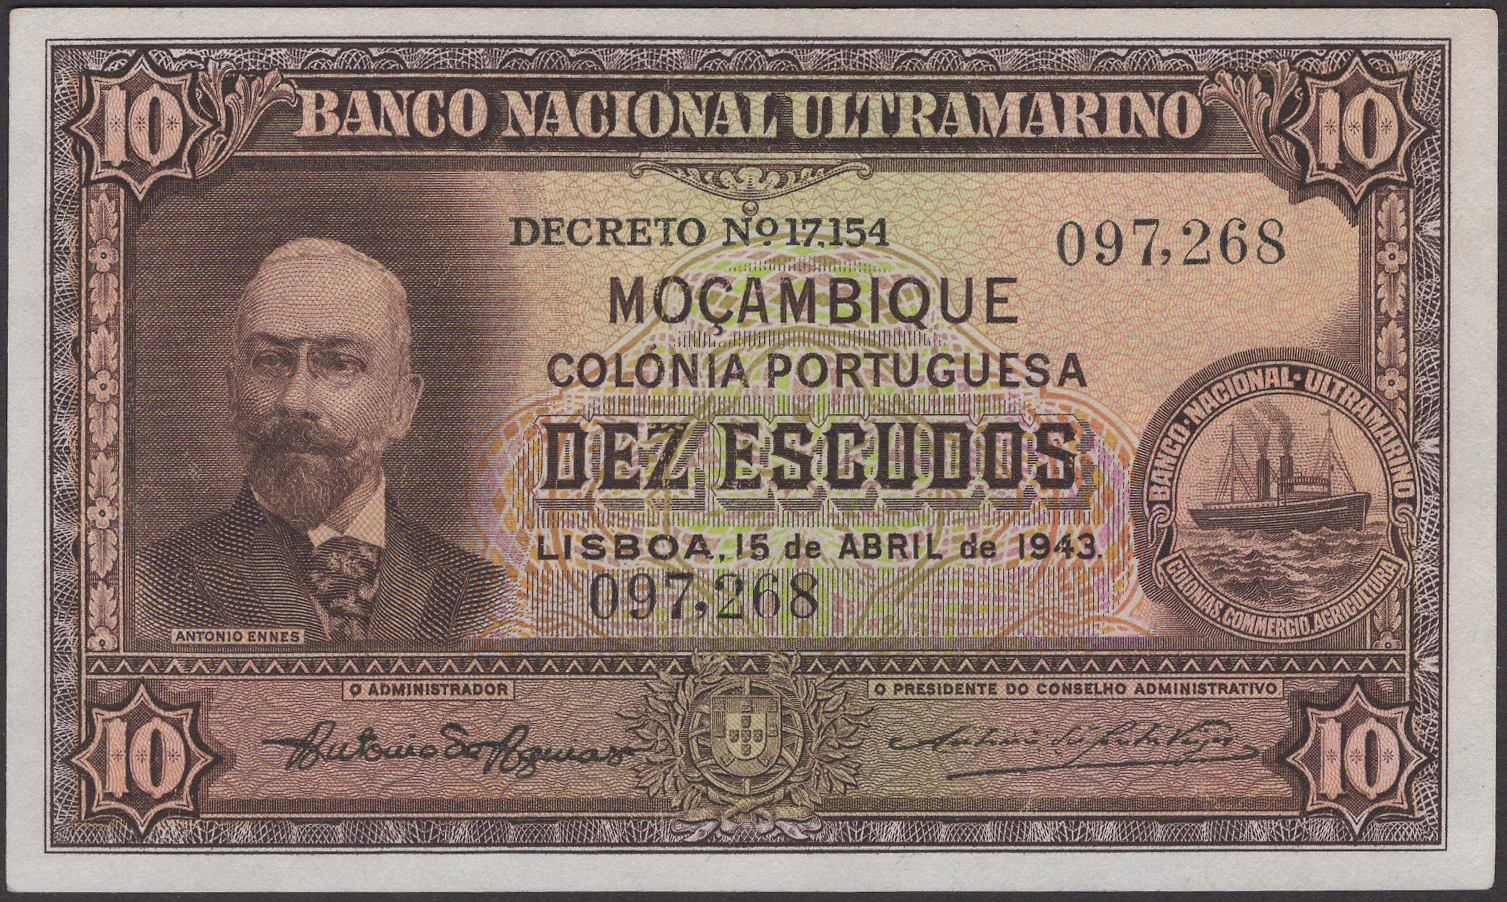 Banco Nacional Ultramarino, Mozambique, 10 Escudos, 15 April 1943, serial number 097268,...